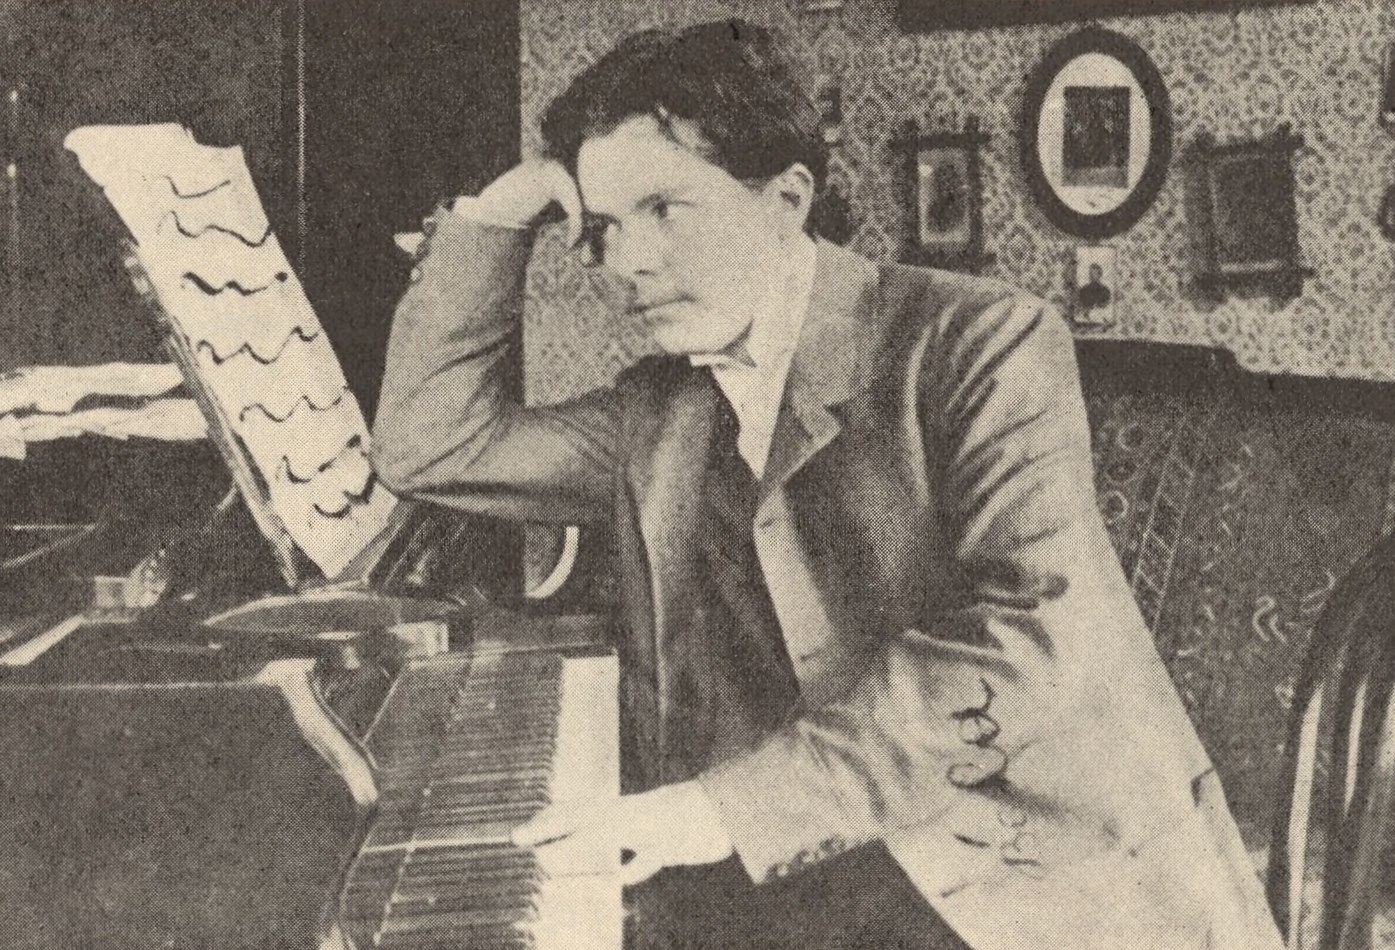 Béla Bartók en 1901 au piano chez la famille Voit, collection Dille, publié dans l'album Hungaroton SLPX 1300